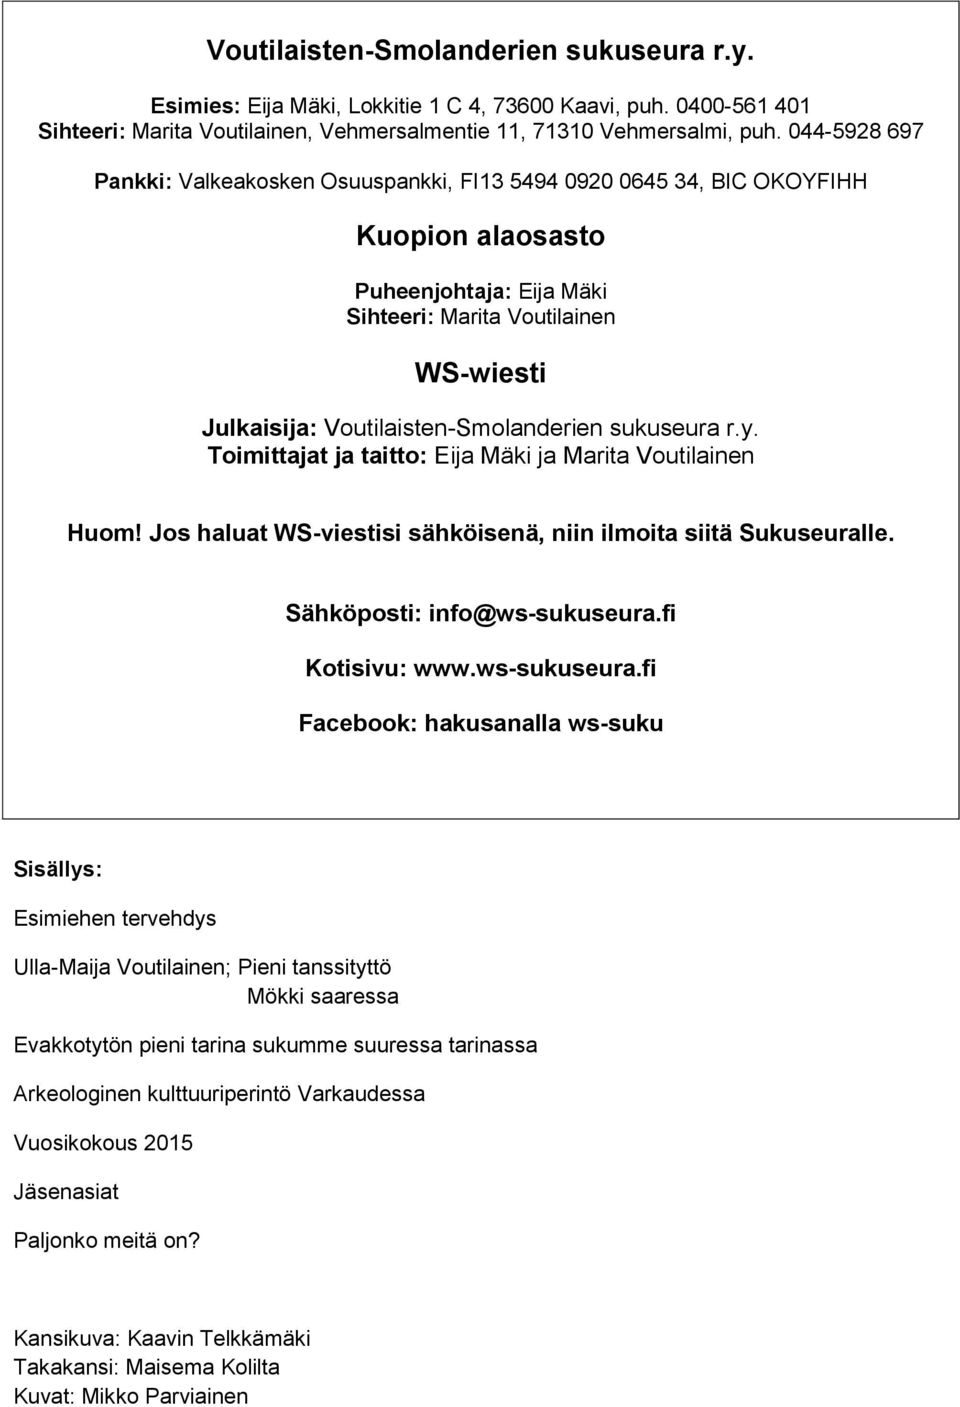 Voutilaisten-Smolanderien sukuseura r.y. Toimittajat ja taitto: Eija Mäki ja Marita Voutilainen Huom! Jos haluat WS-viestisi sähköisenä, niin ilmoita siitä Sukuseuralle. Sähköposti: info@ws-sukuseura.